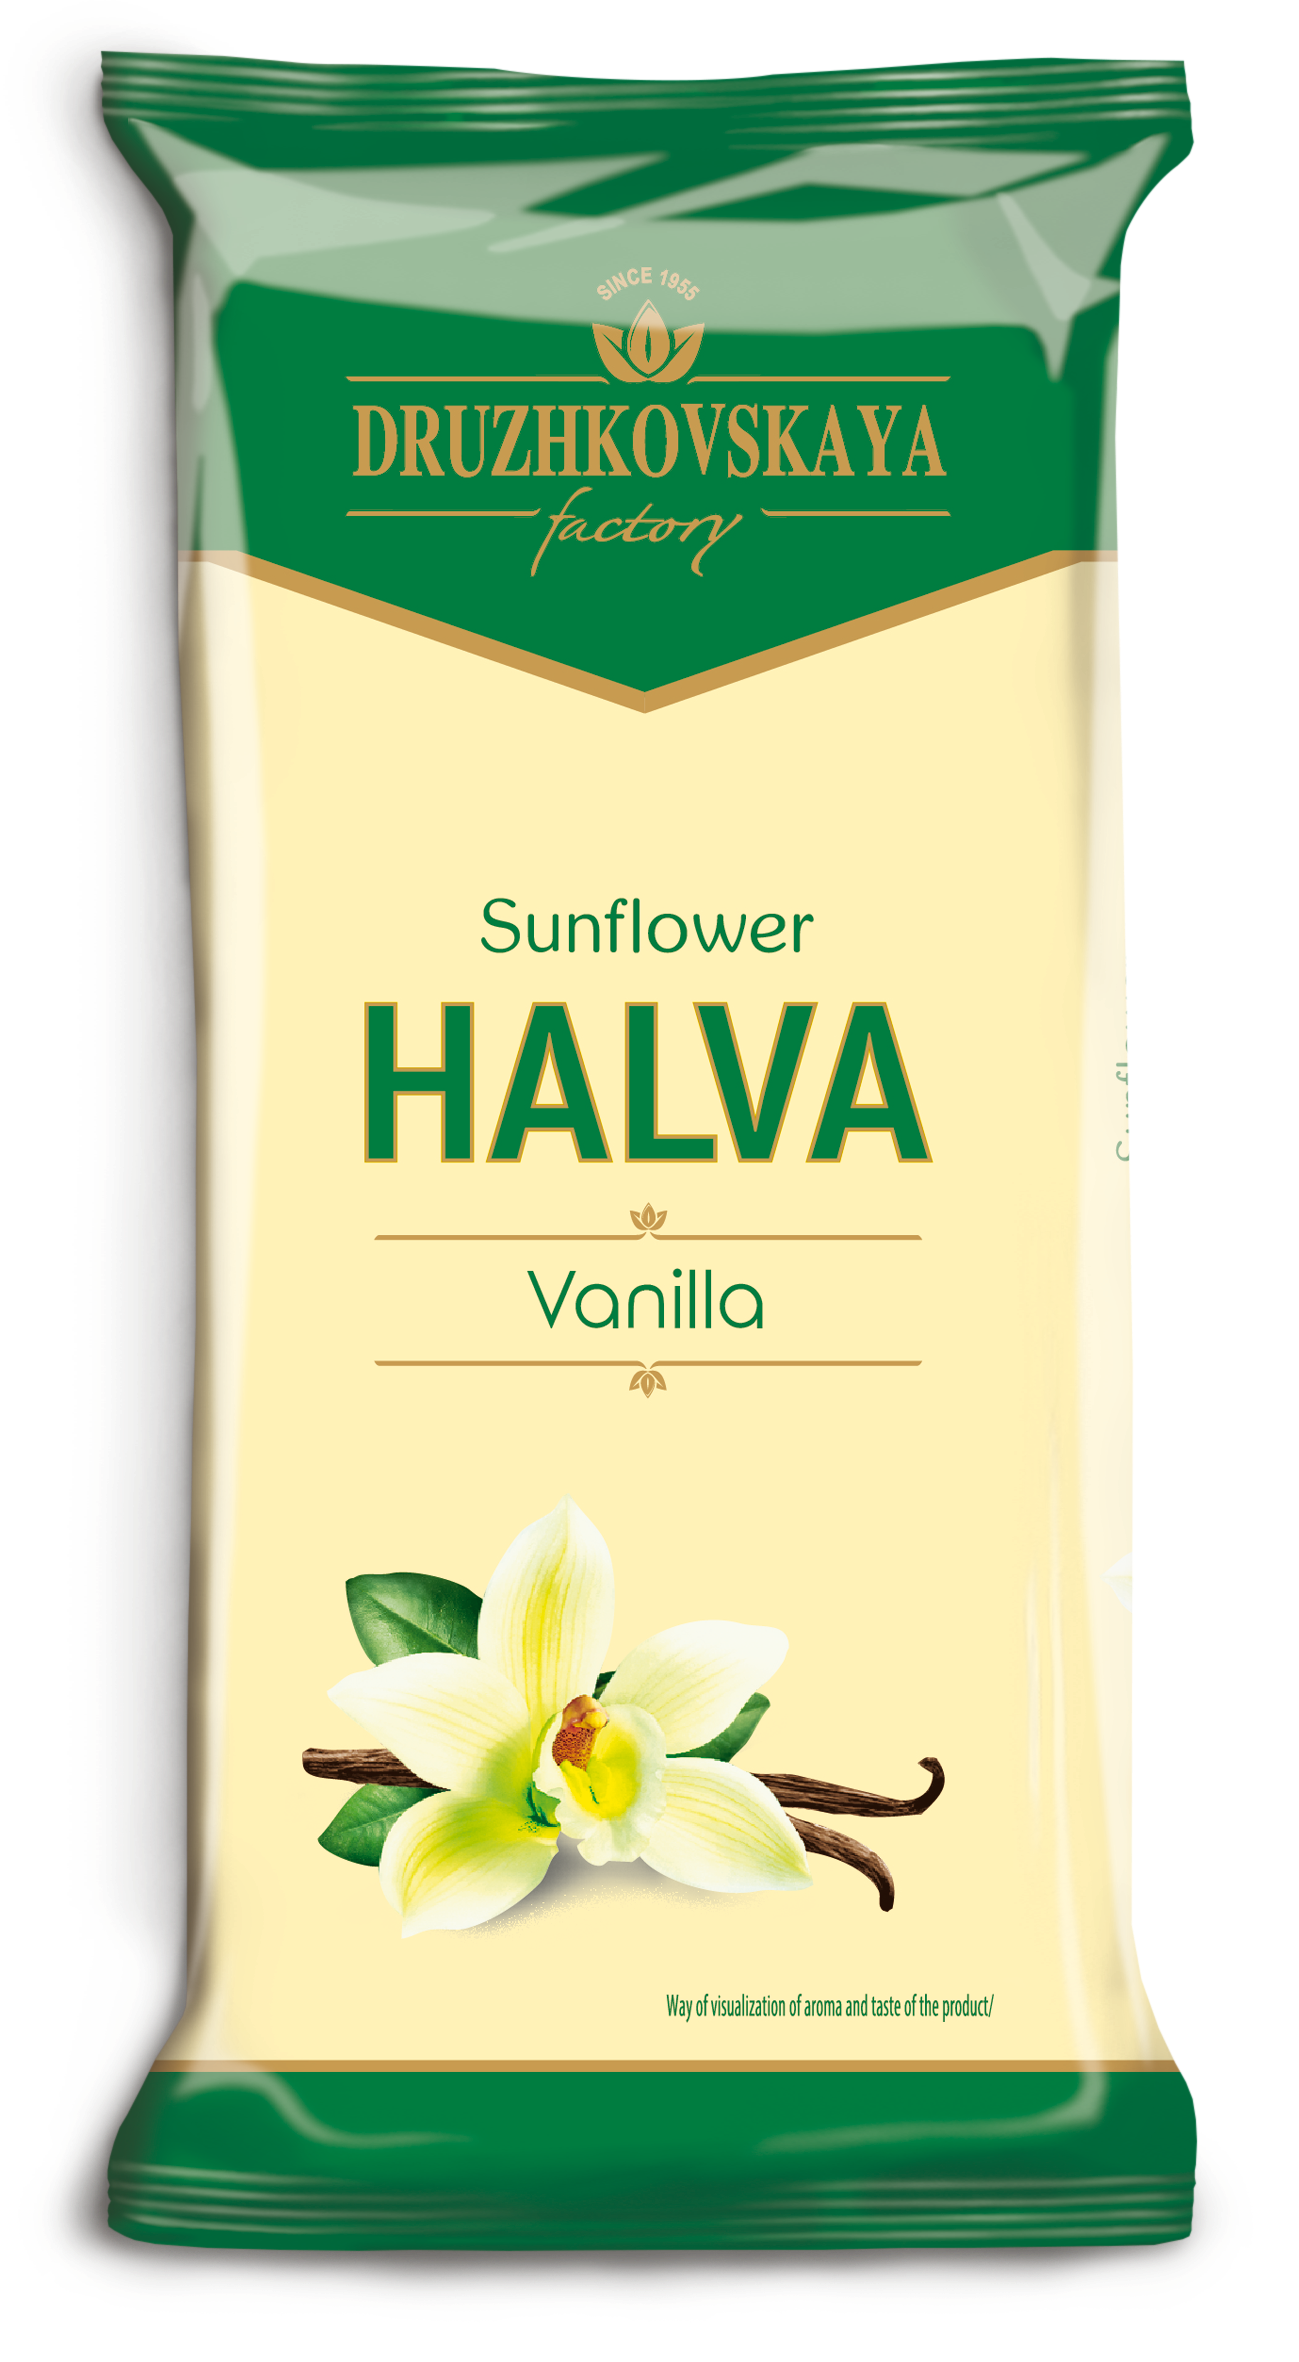 Sunflower Halva Vanilla Packed in Flow-pack, 300 g